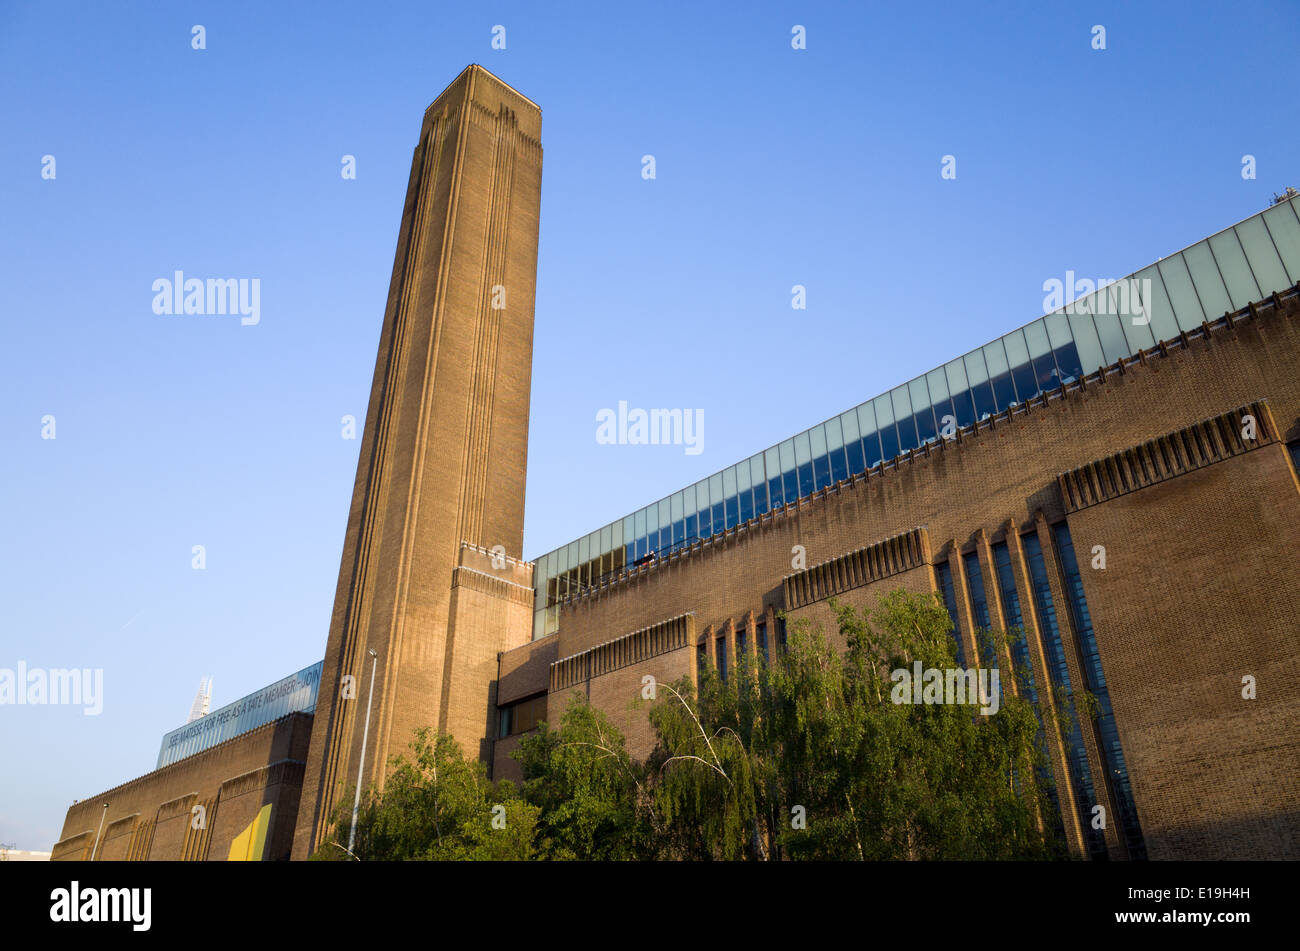 Tate Modern art gallery, London, UK Stock Photo